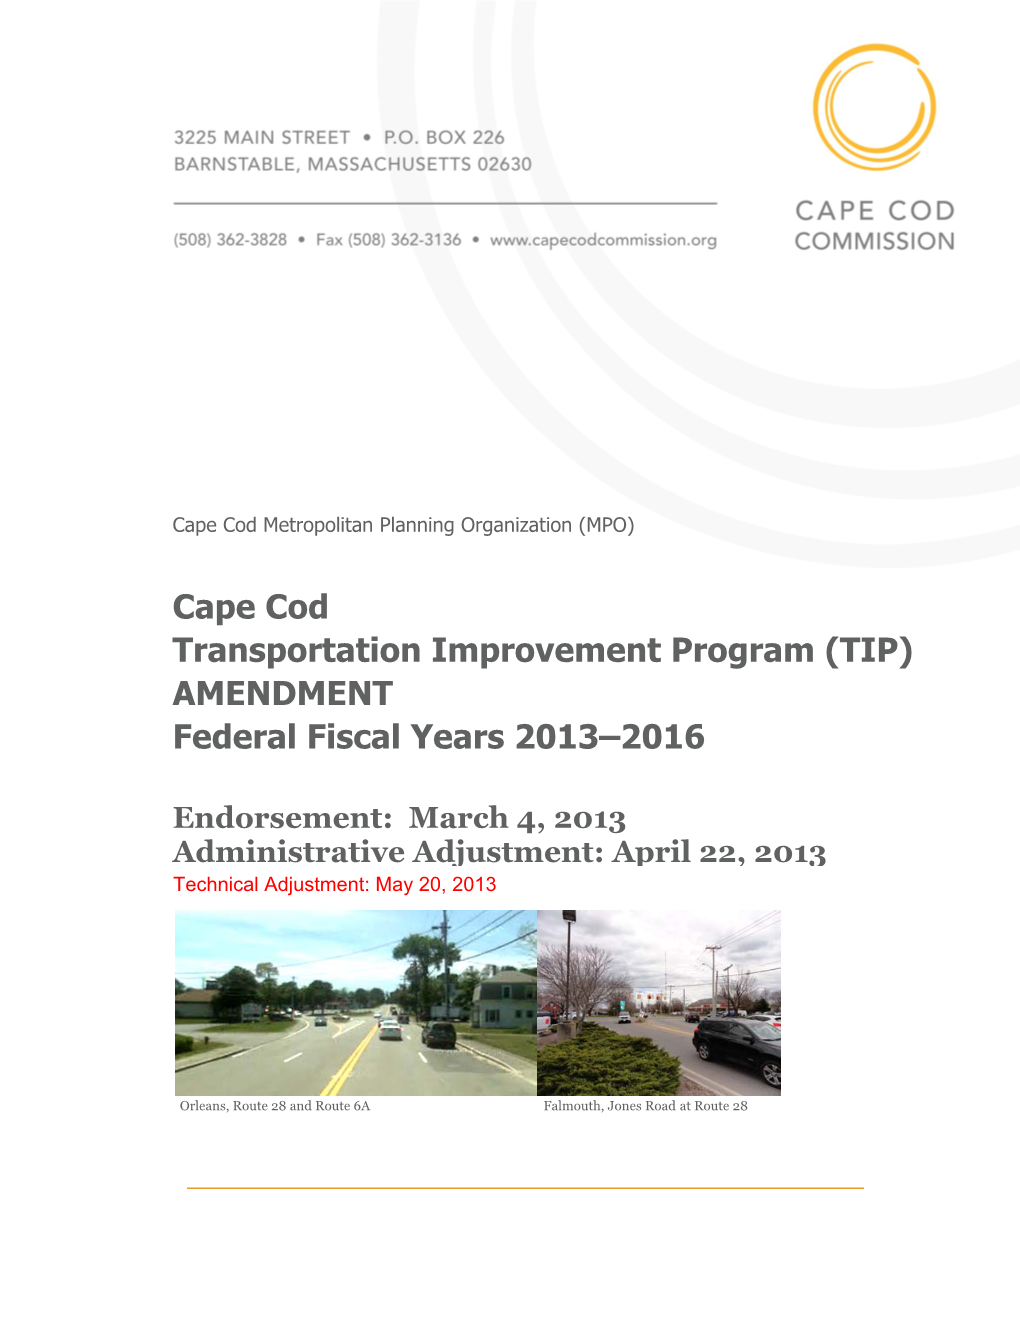 Cape Cod Transportation Improvement Program (TIP) Amendment